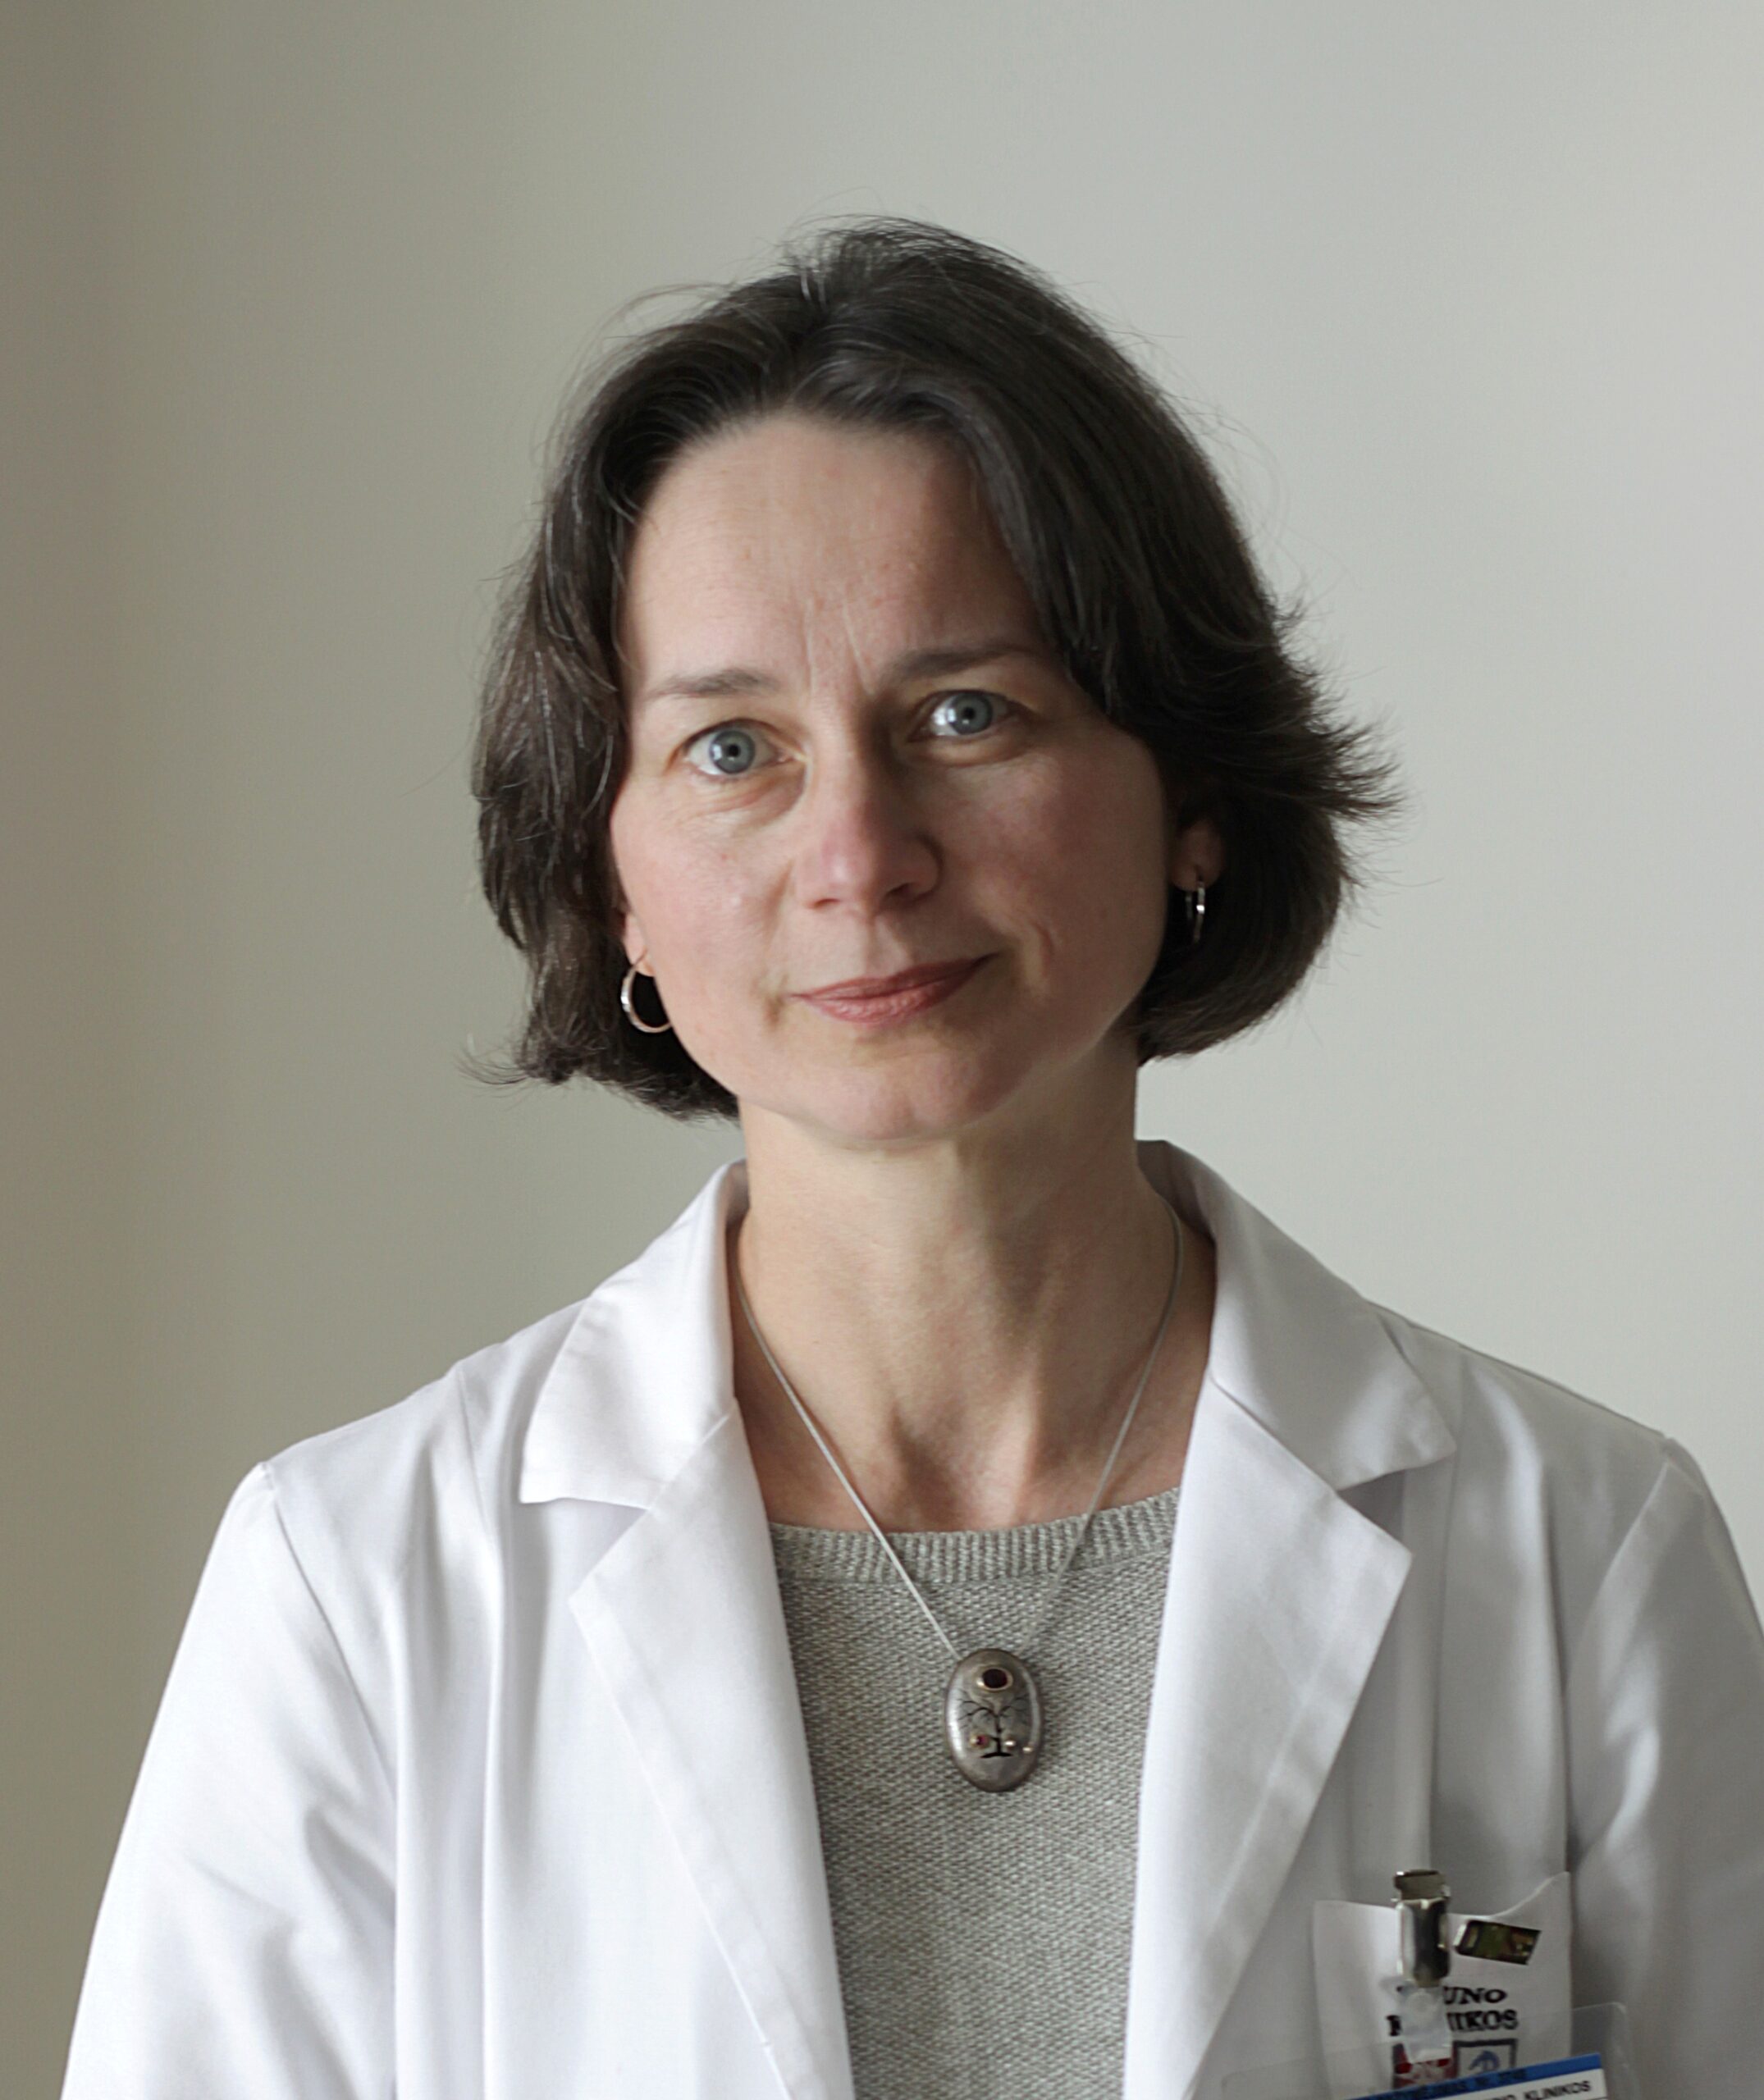 Rasa Jančiauskienė - Medical oncologist - Image